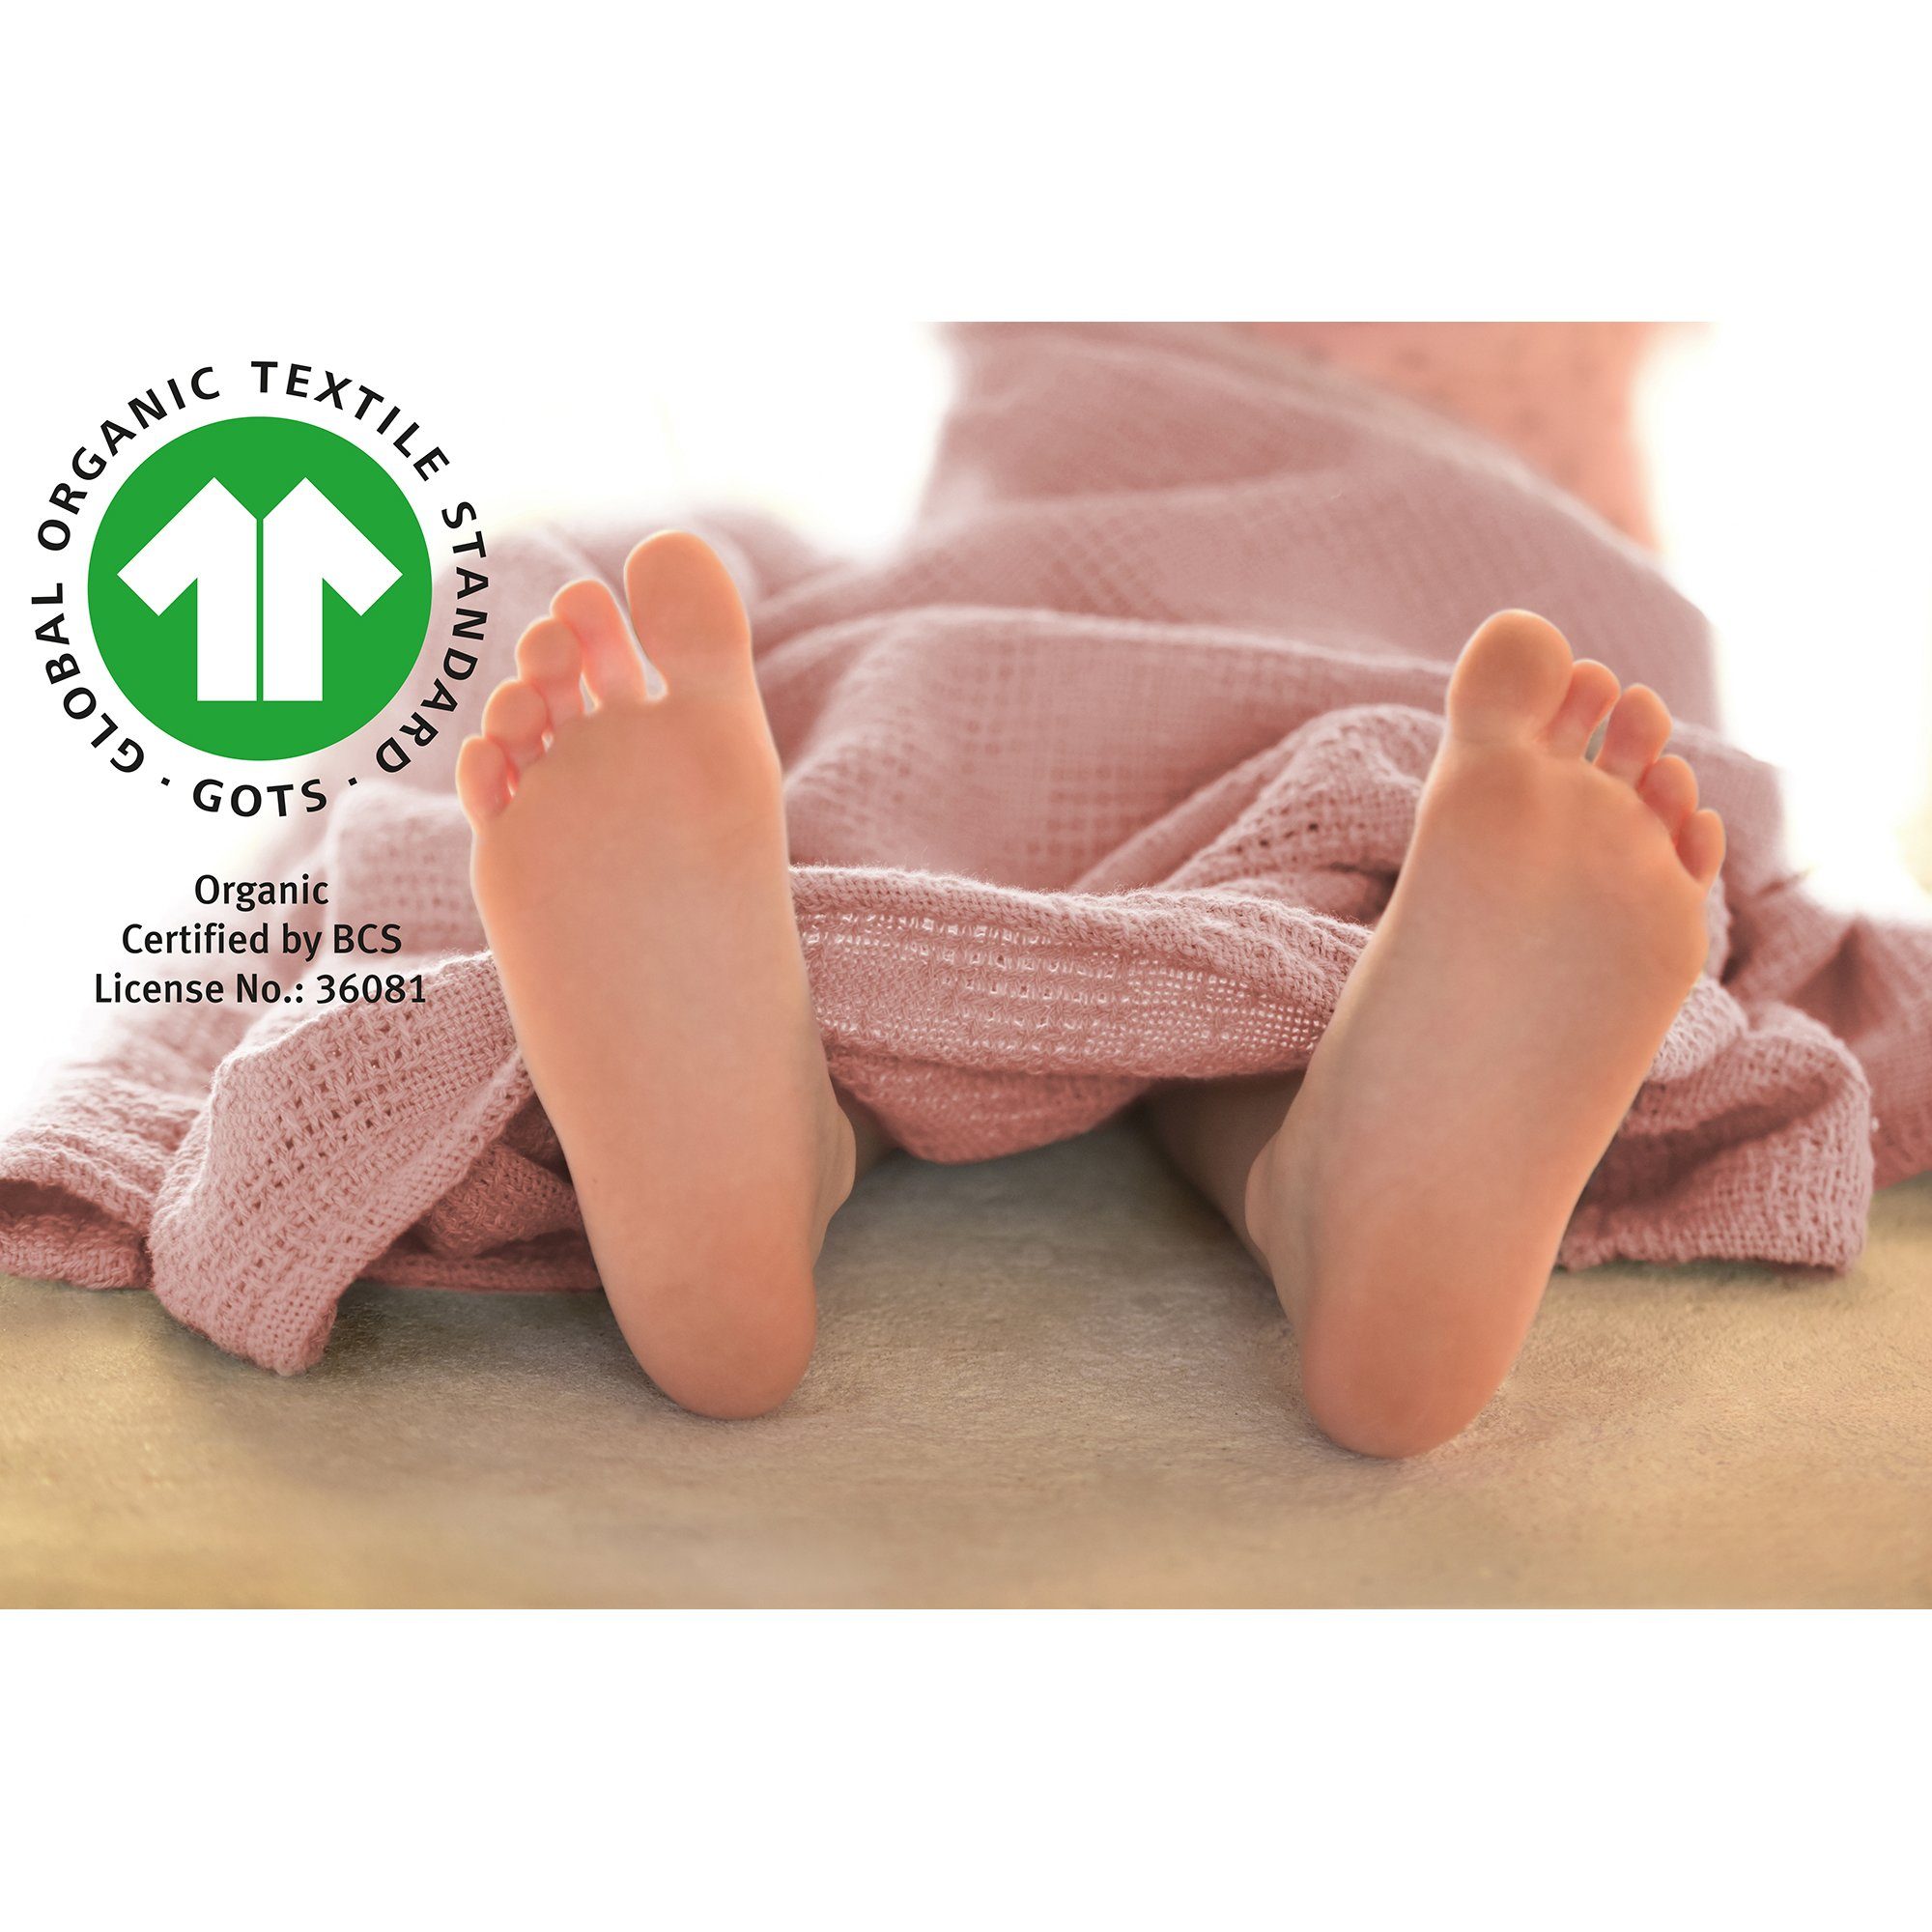 Handtuch, Lil Planet & Decke Waschlappen, Neugeborenen-Geschenkset roba® rosa/mauve Schmusetuch